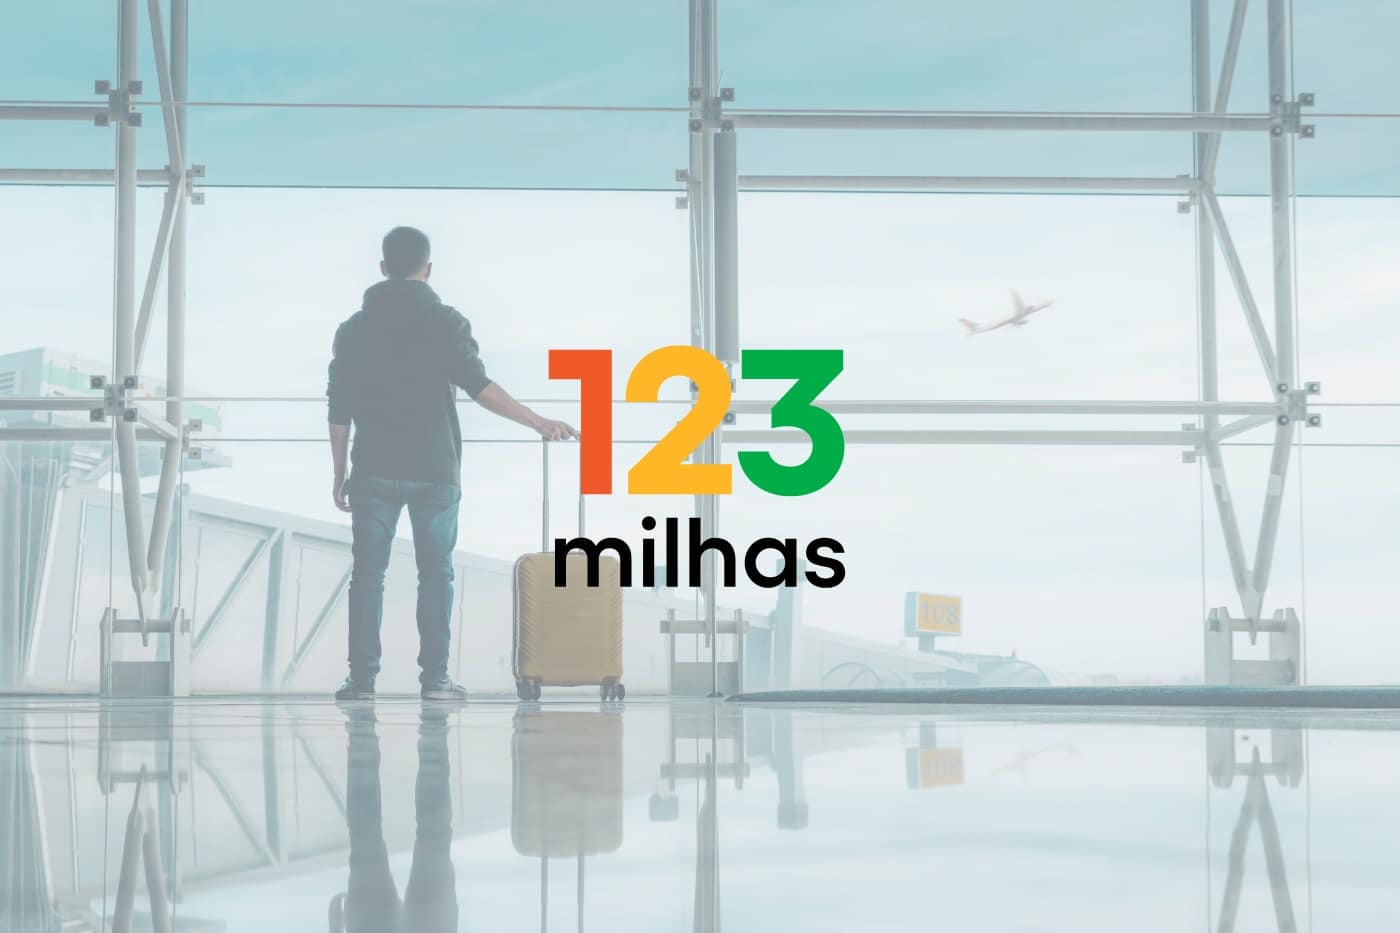 Procon Goiás faz orientações aos consumidores prejudicados pela 123 milhas 